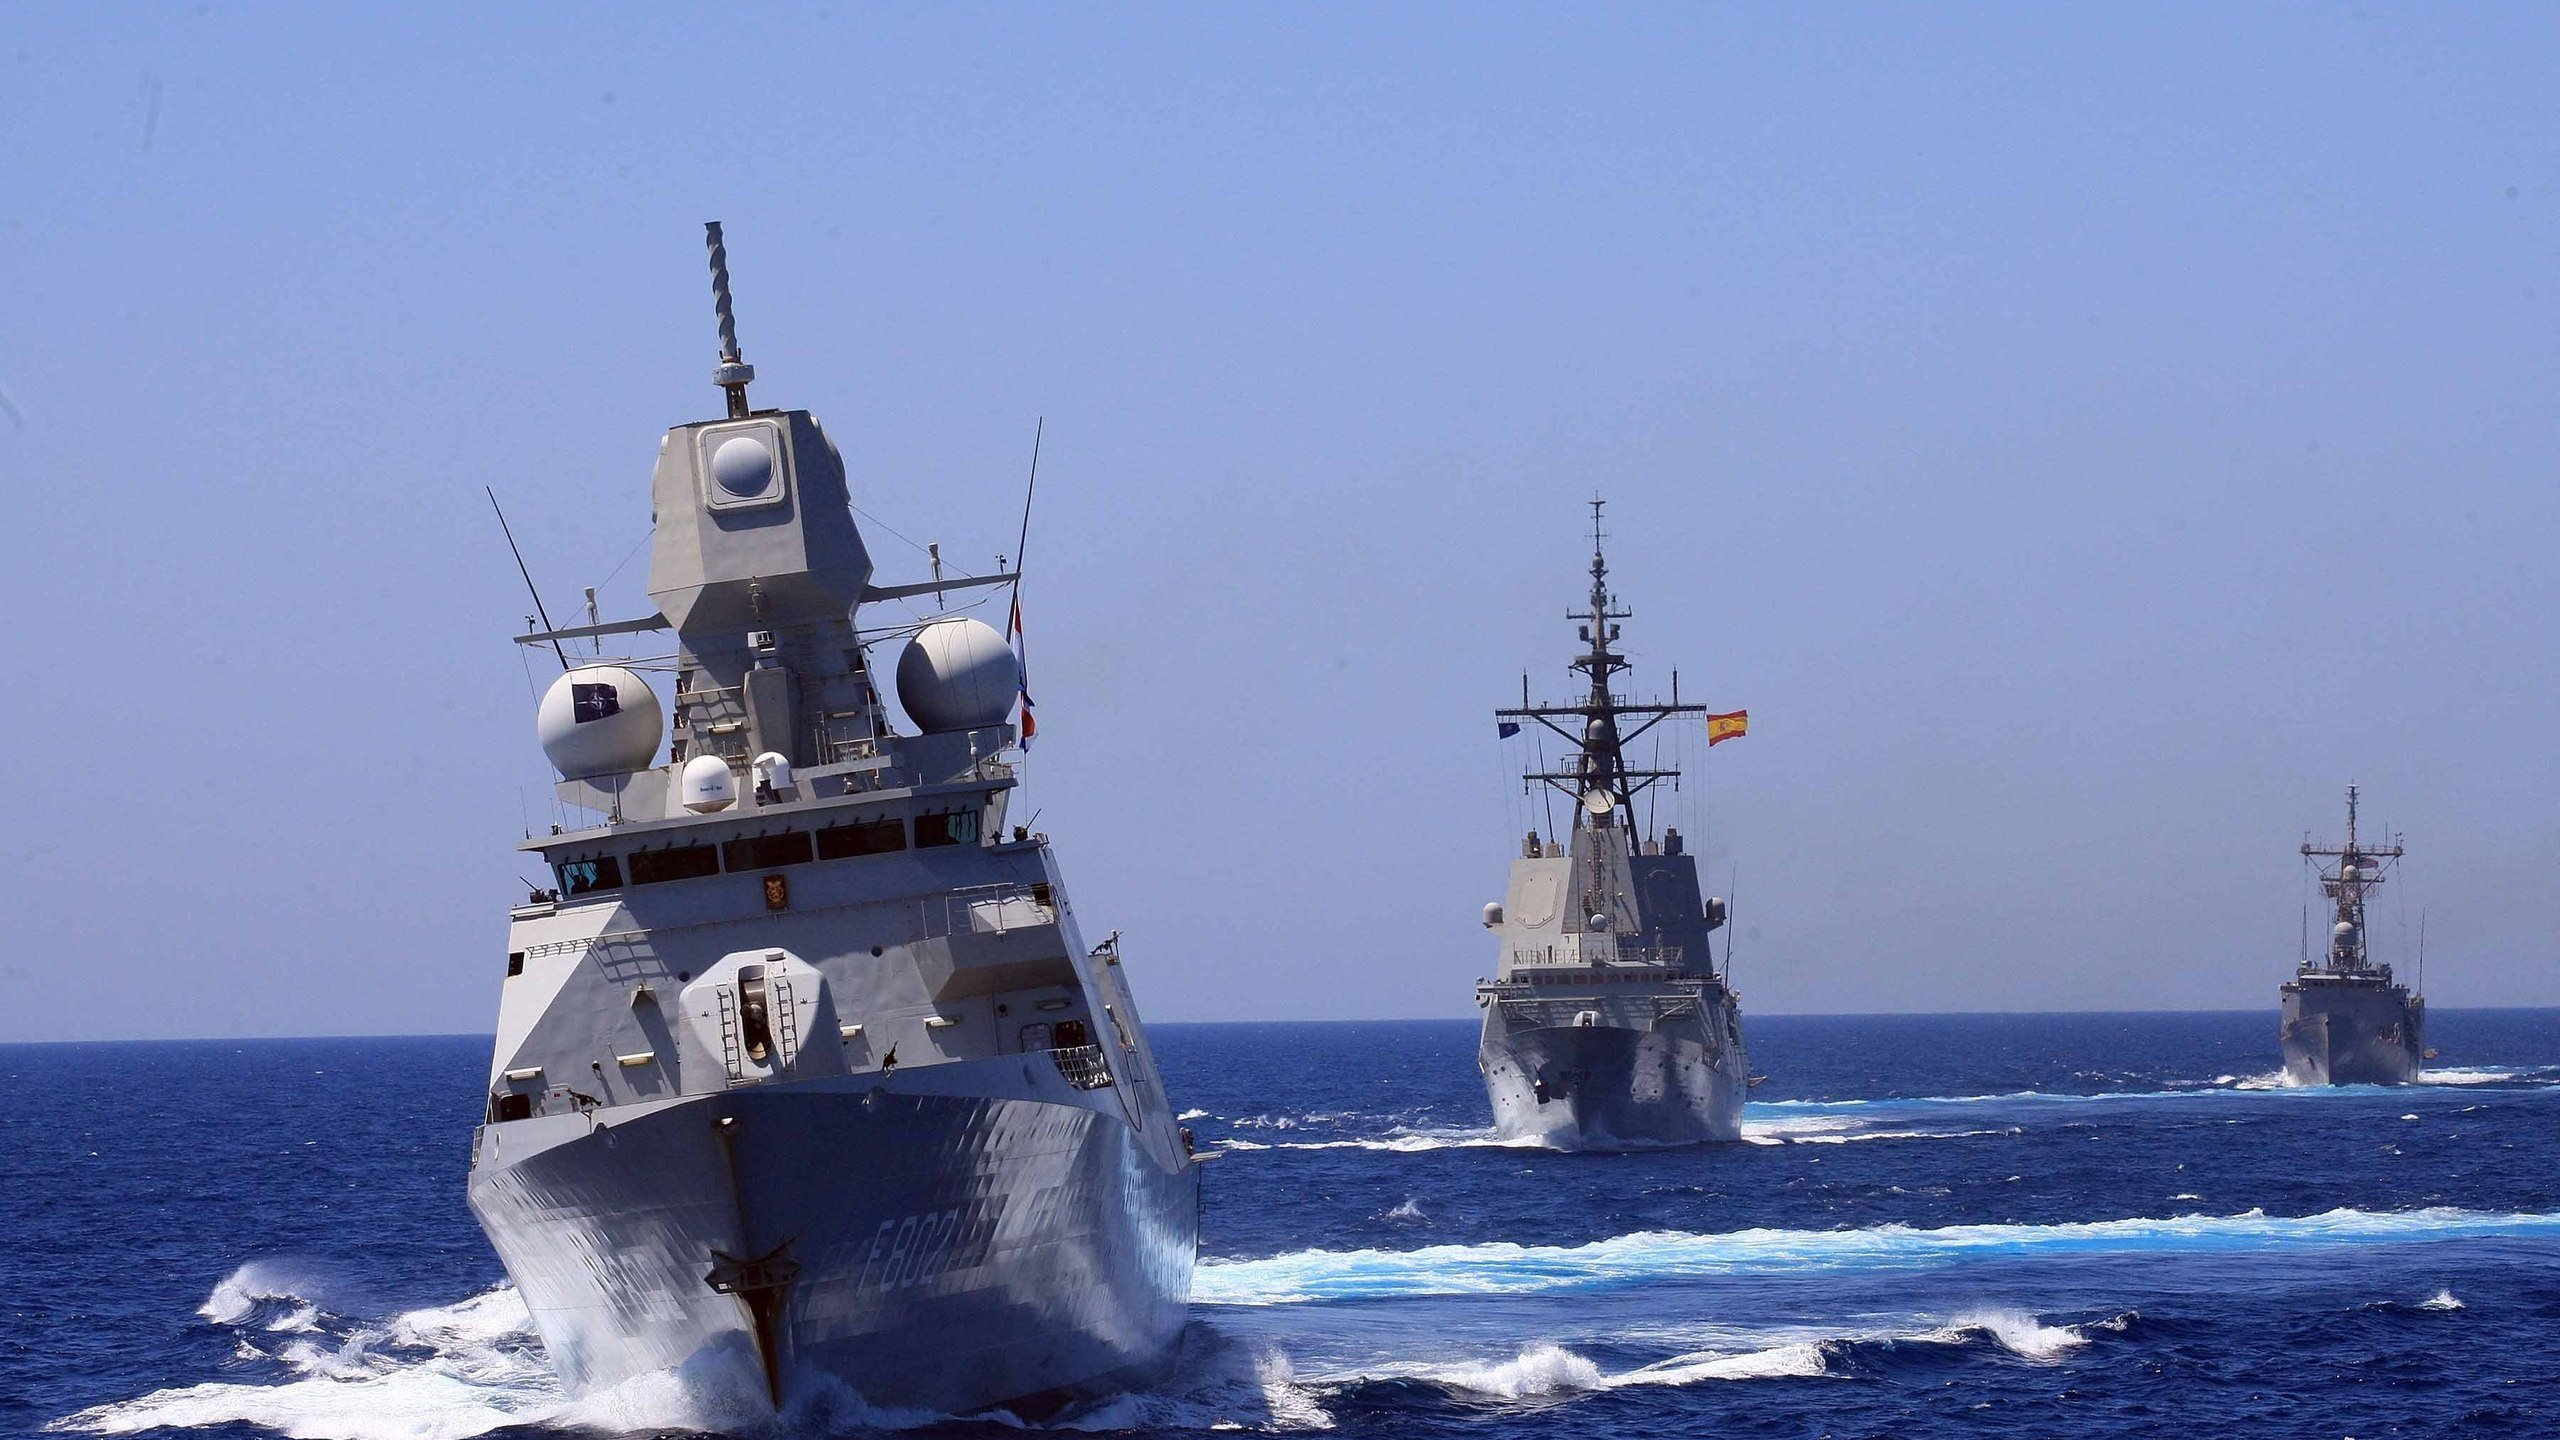 海军的船, 军舰, 海军, 船只, 驱逐舰 壁纸 2560x1440 允许